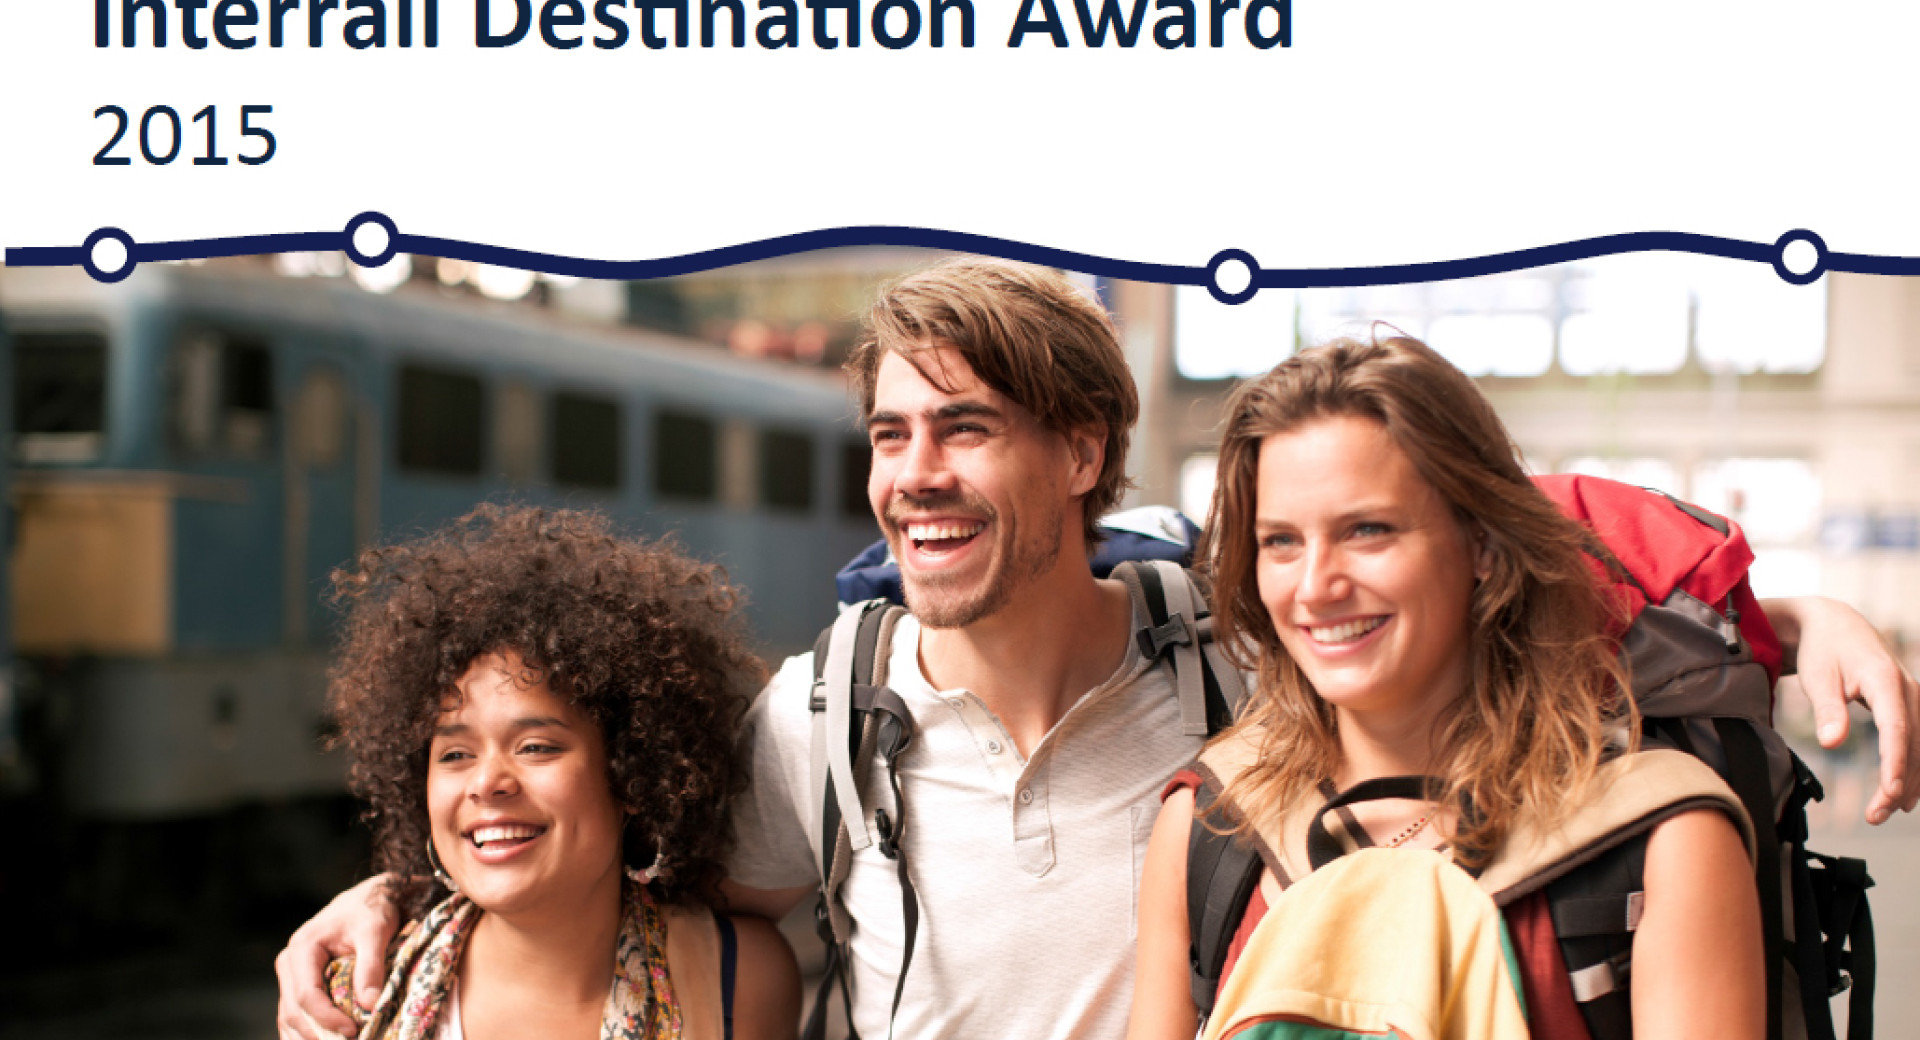 Ljubljana v ožjem izboru glasovanja za nagrado InterRail destinacija leta 2015